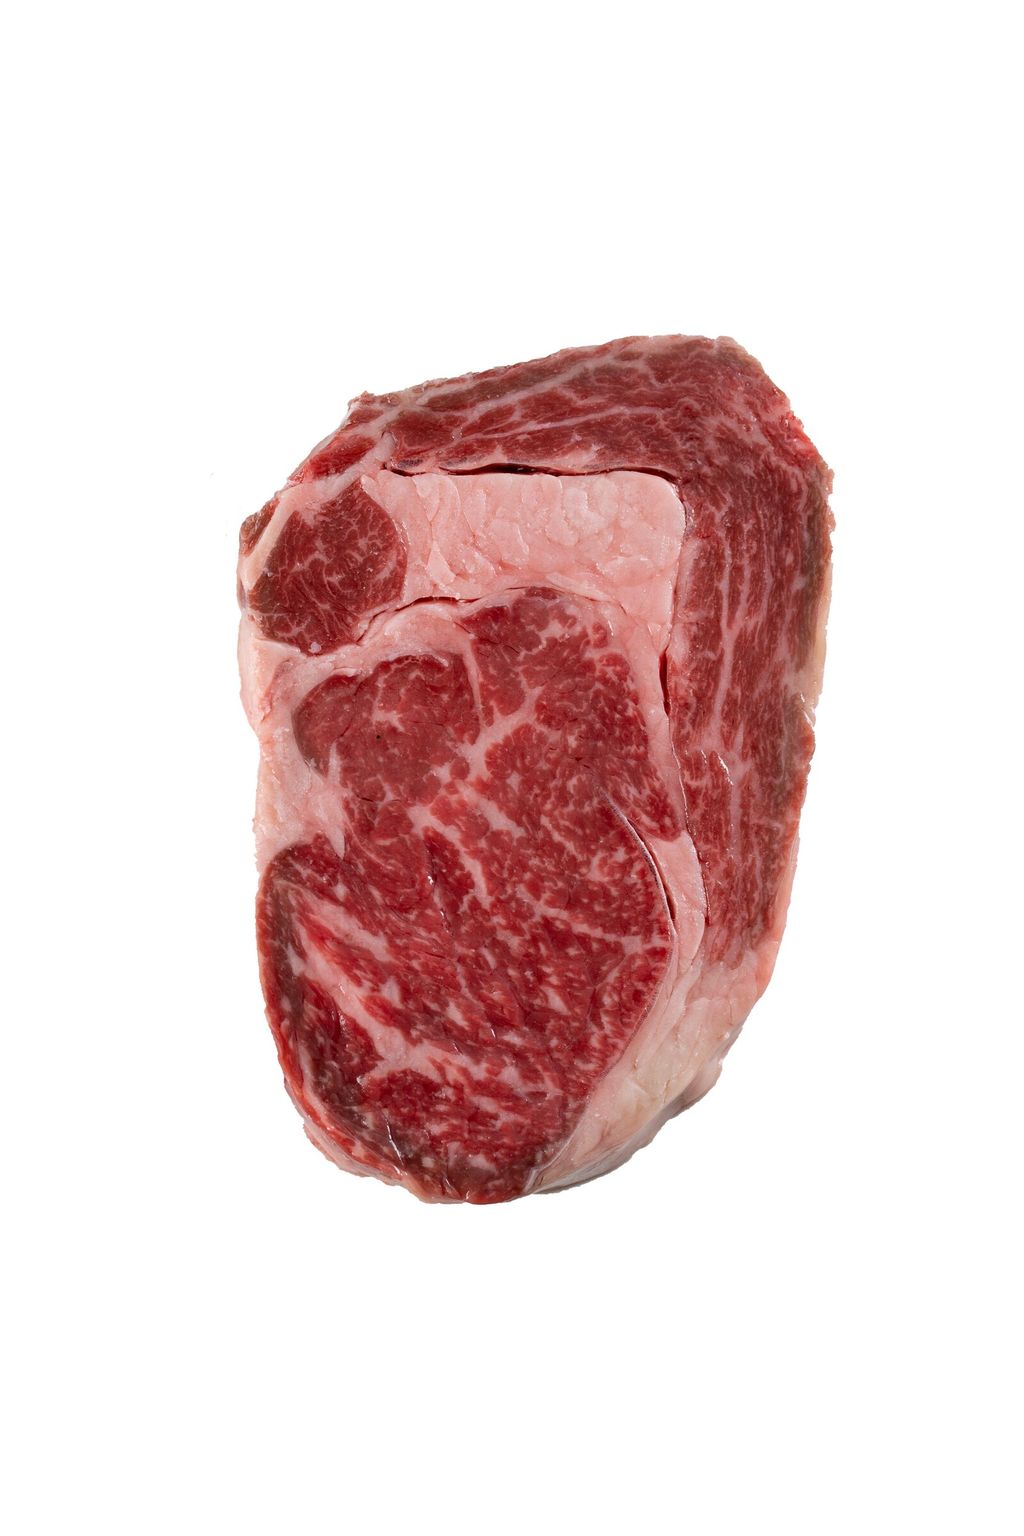 Steak (White).jpg